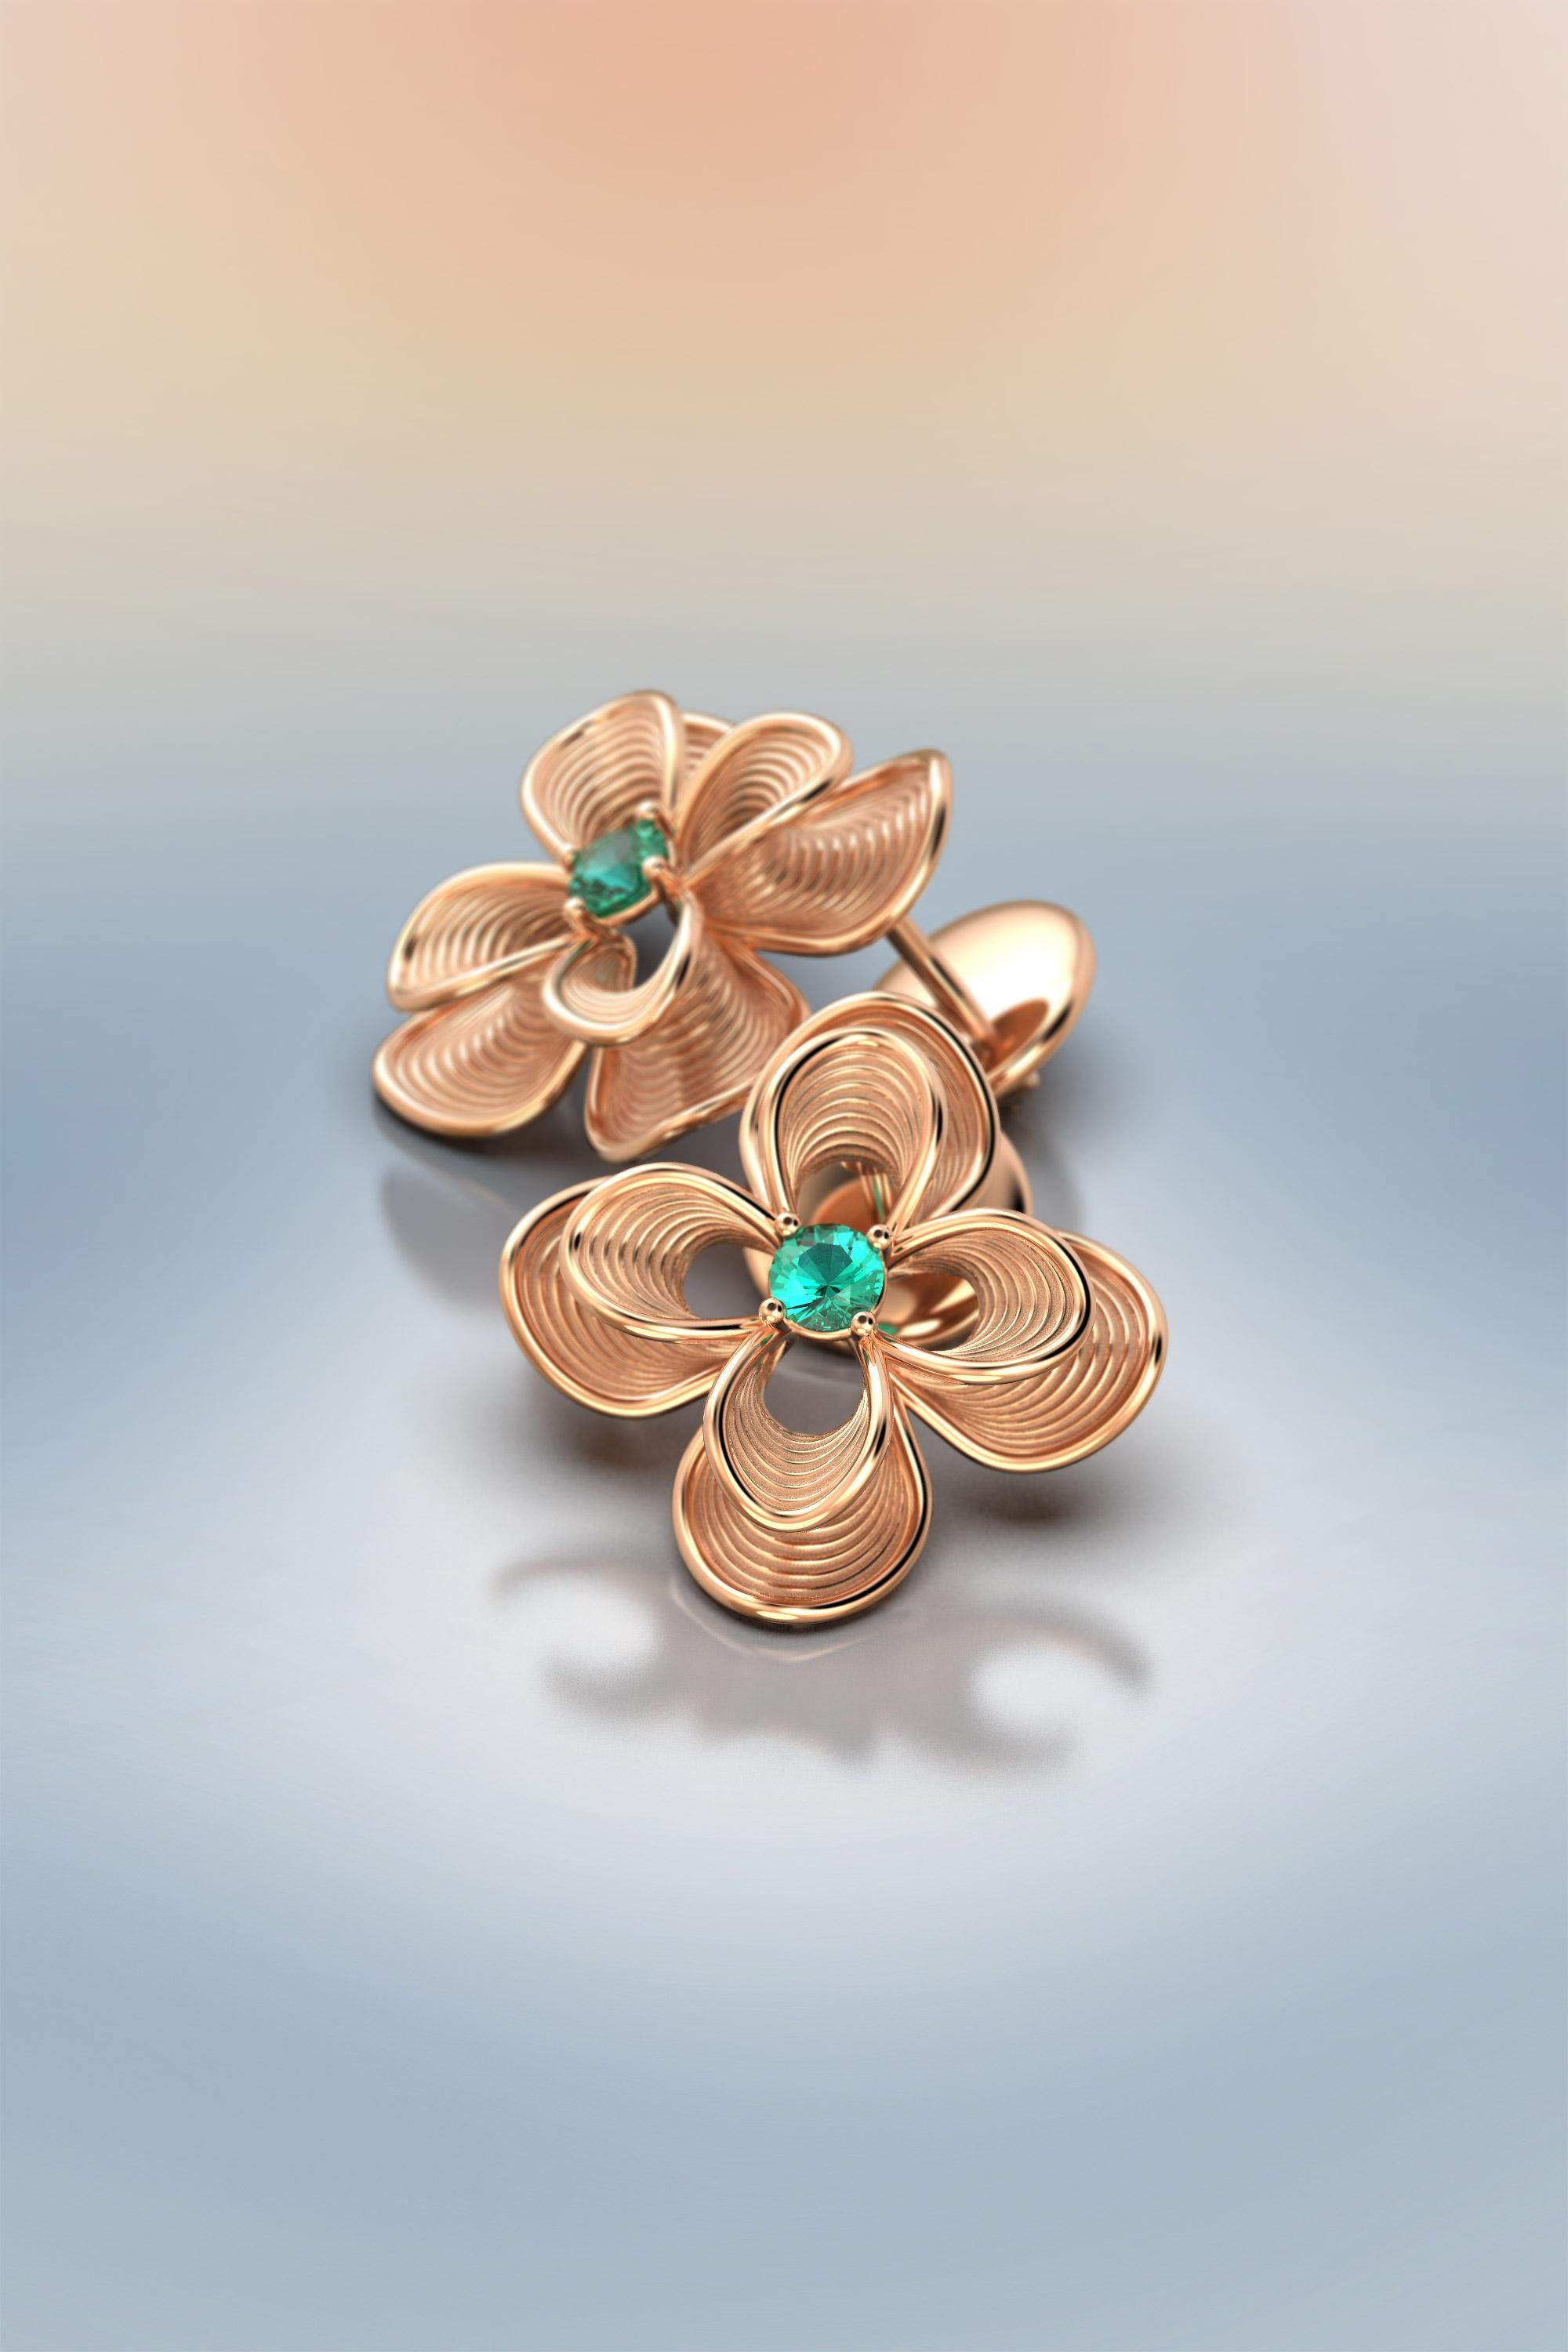 Women's Emerald Stud Earrings in 18k Italian Gold by Oltremare Gioielli For Sale